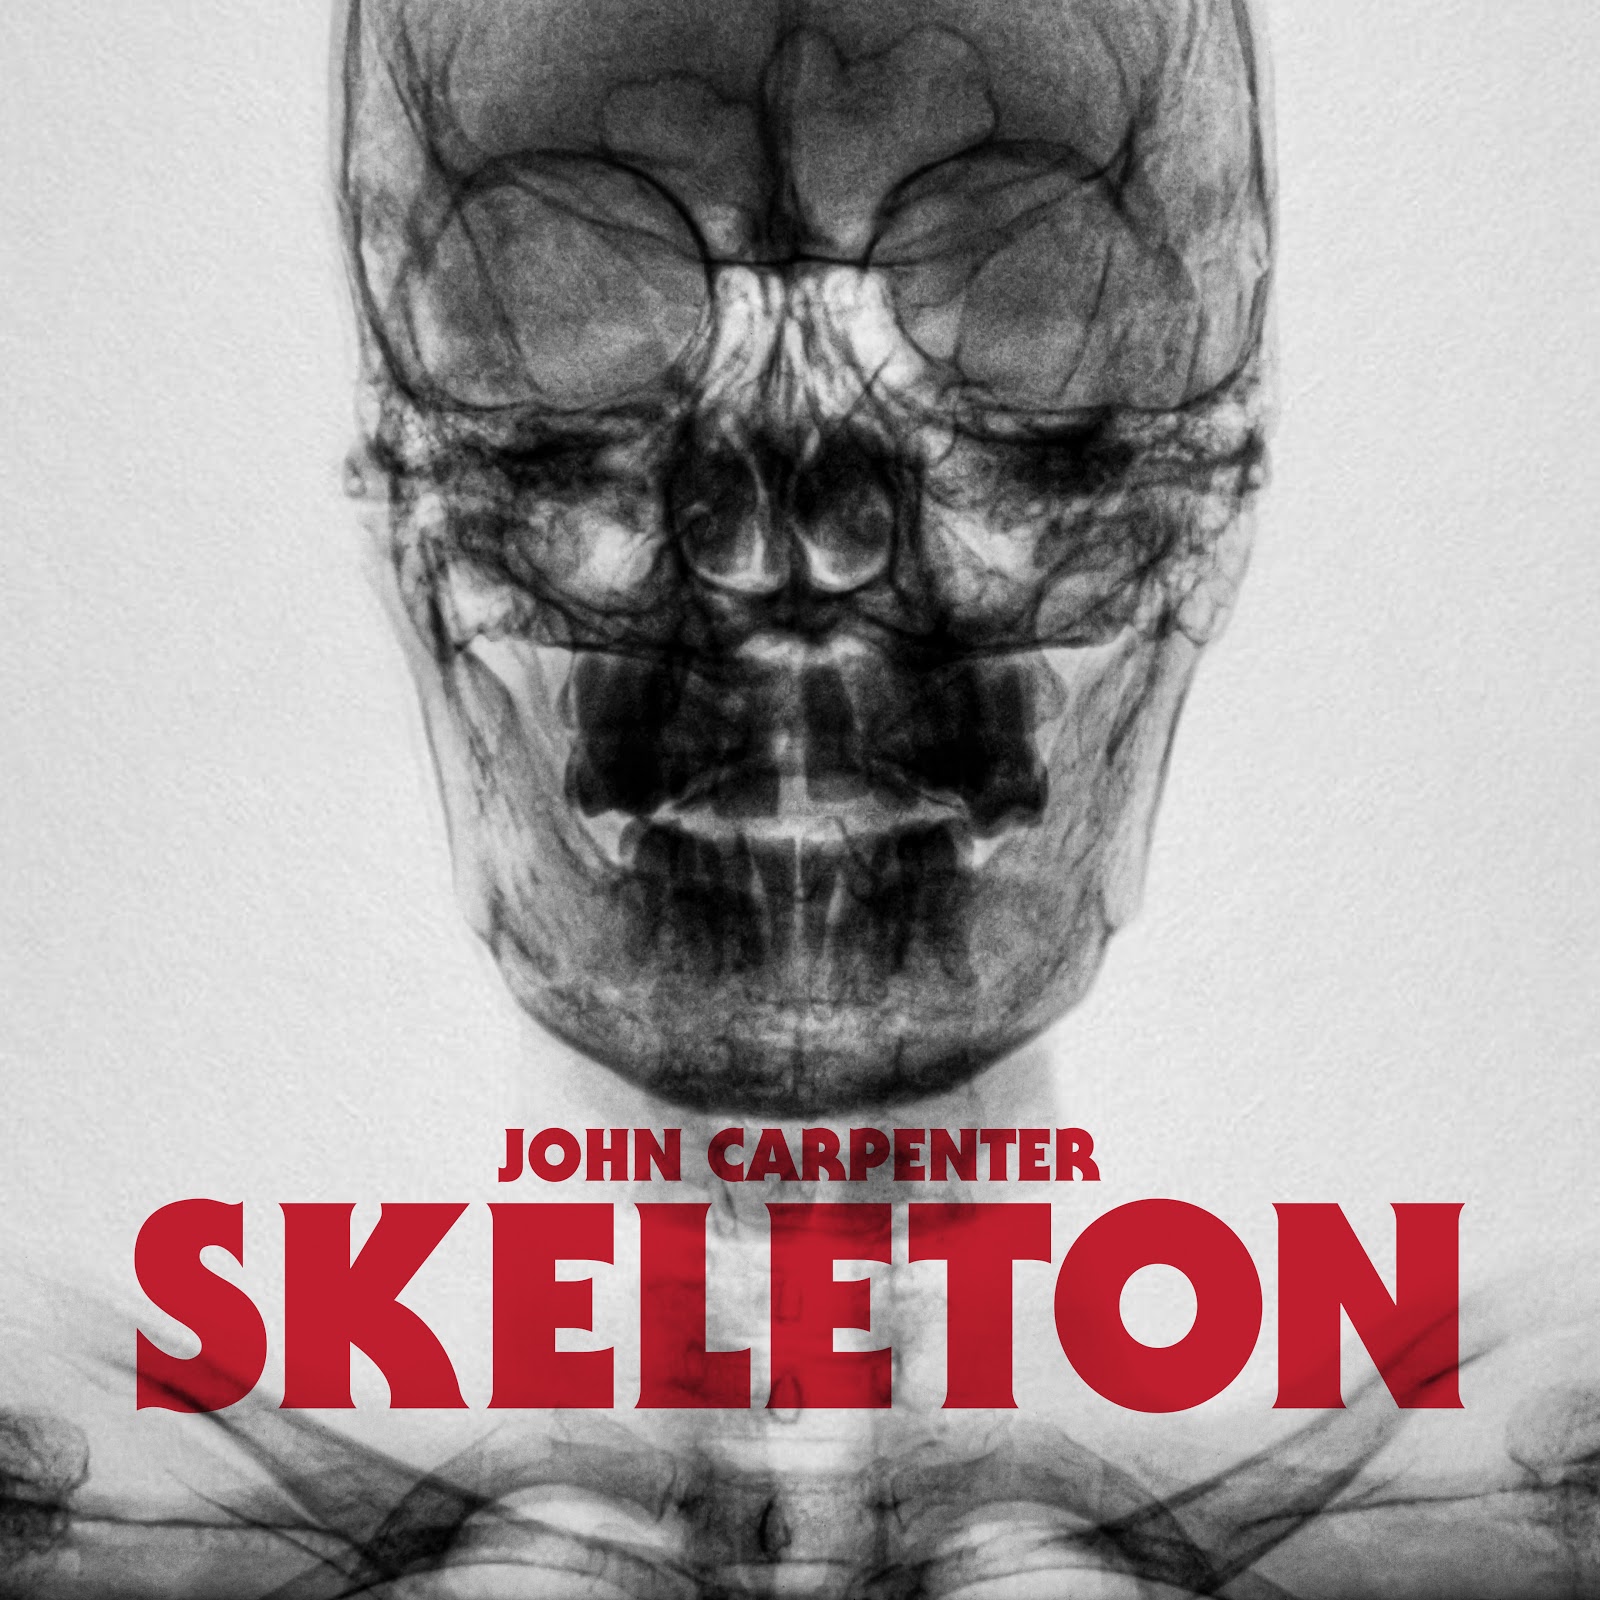 John Carpenter Skeleton single cover